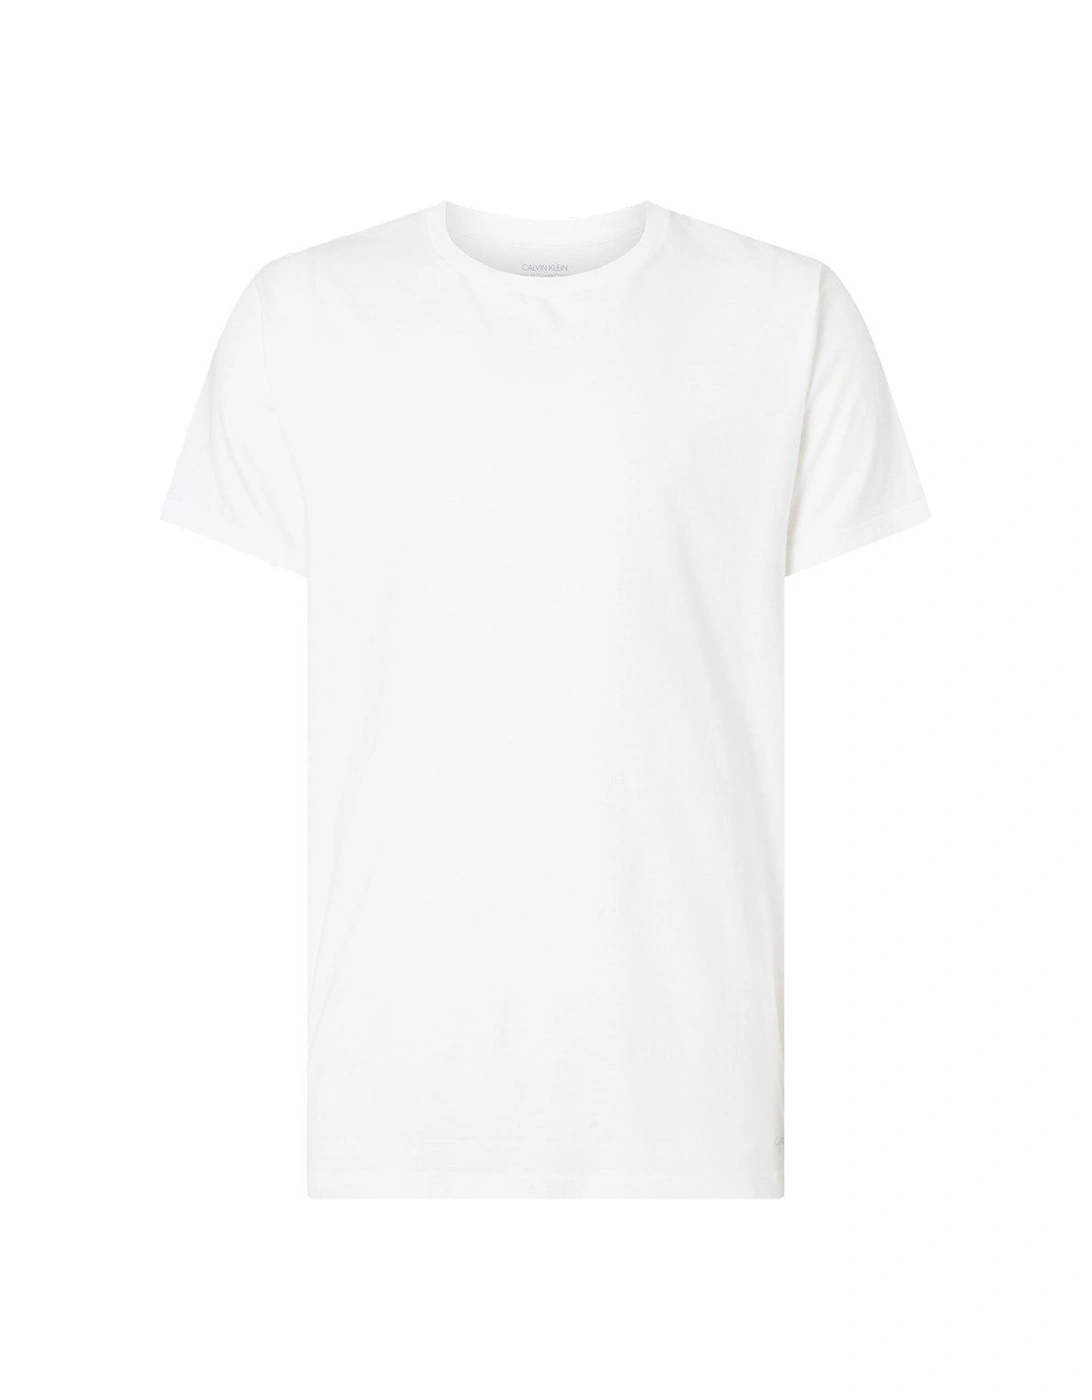 Loungewear 3 Pack T-Shirt - Black/White/Grey